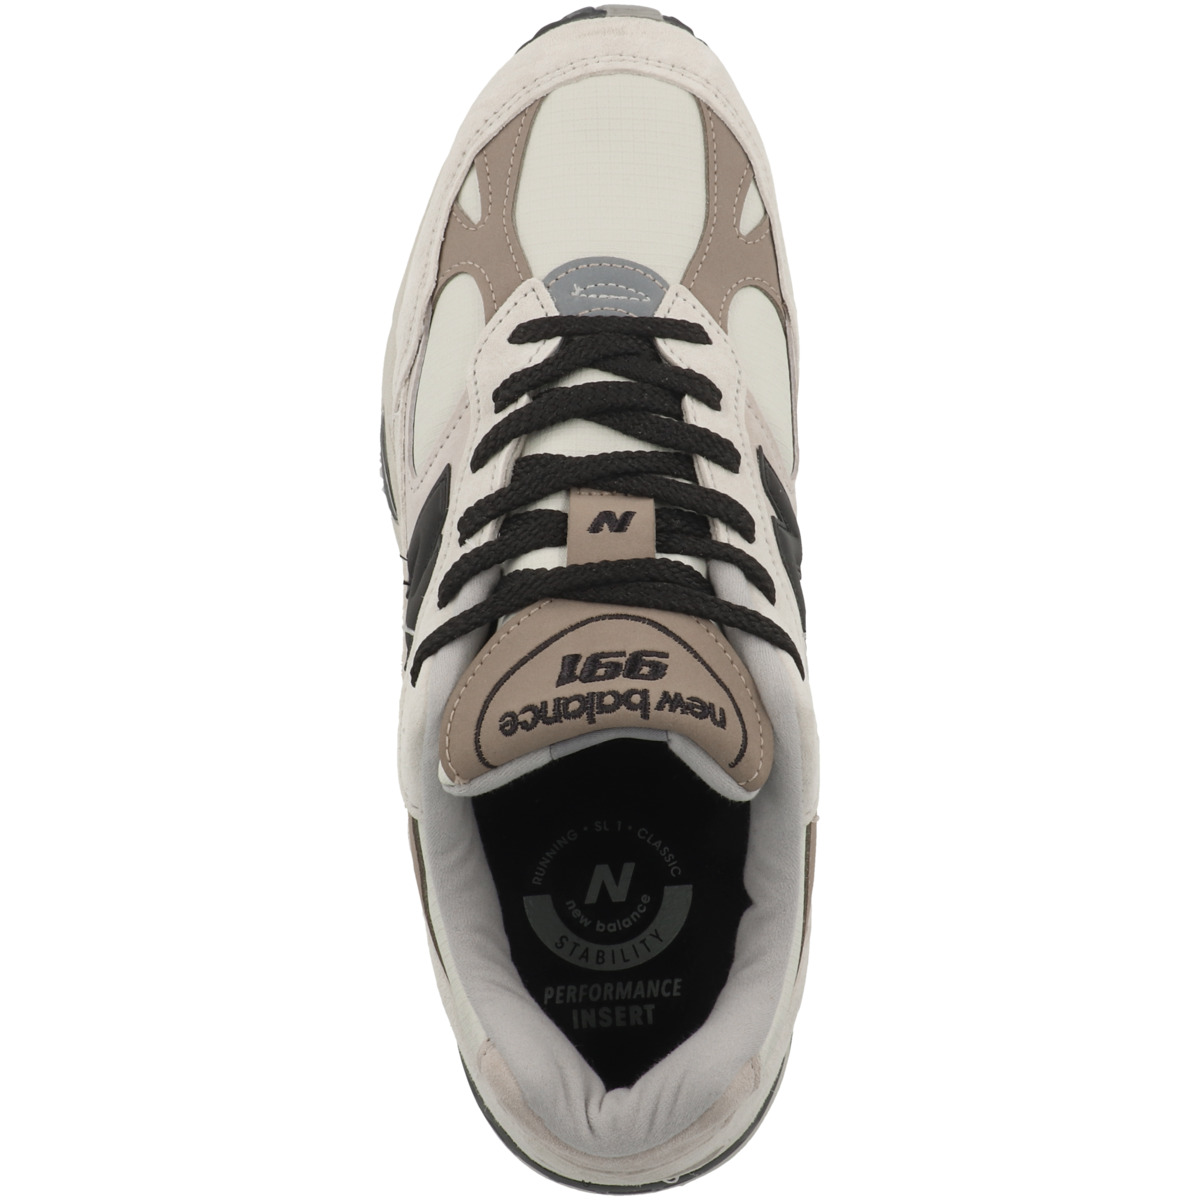 New Balance M 991 WIN Made in UK Sneaker low beige